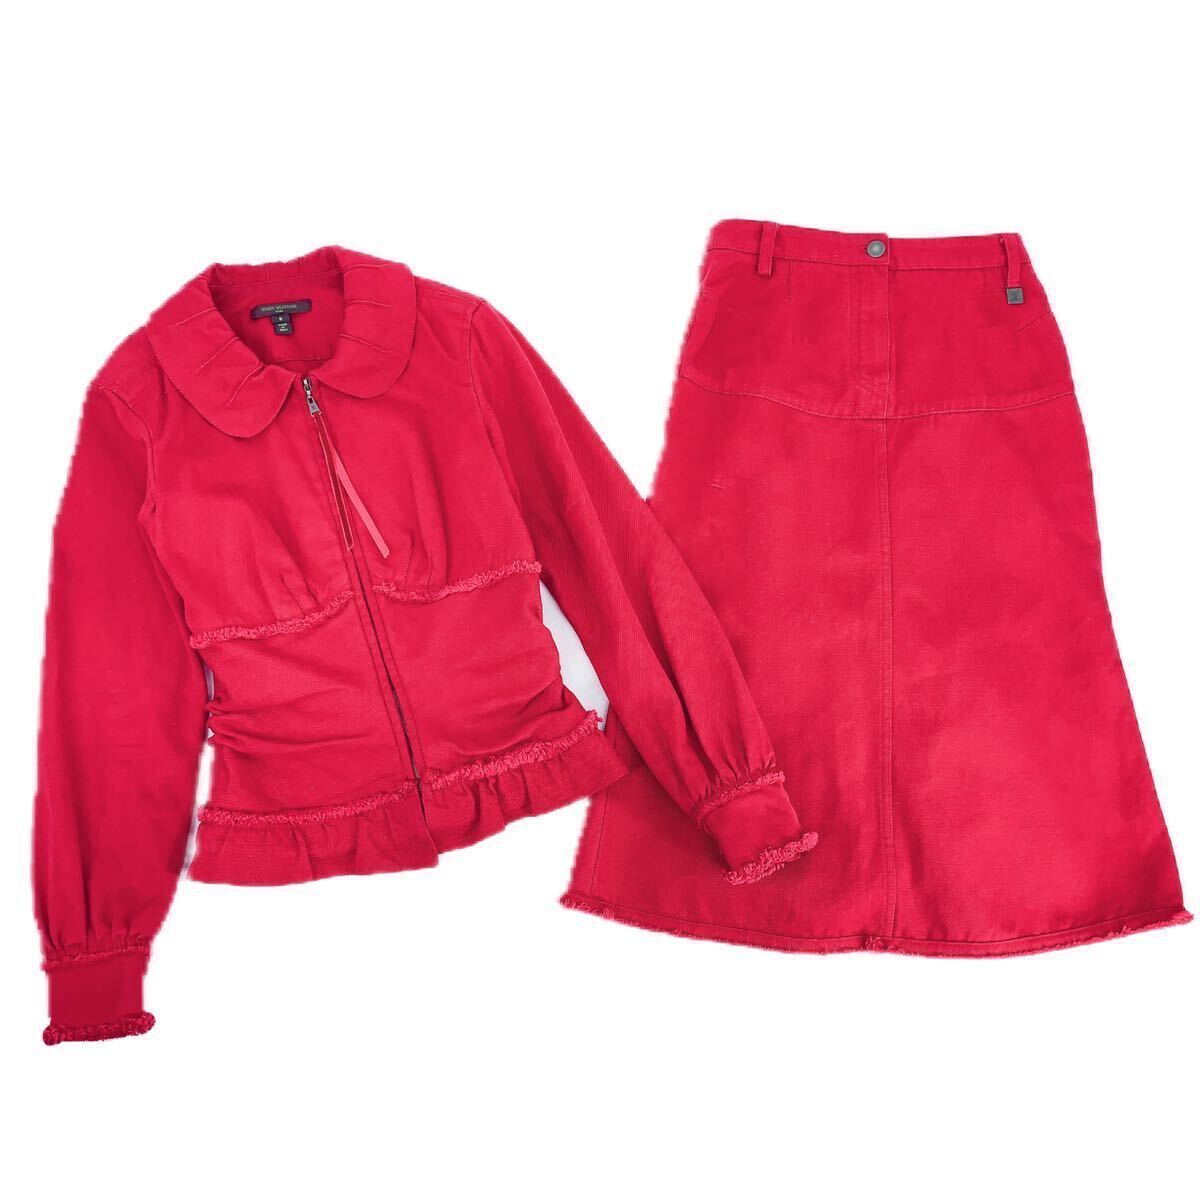 LOUIS VUITTON PARIS Louis Vuitton setup / suit / jacket / skirt LV Logo red lady's 